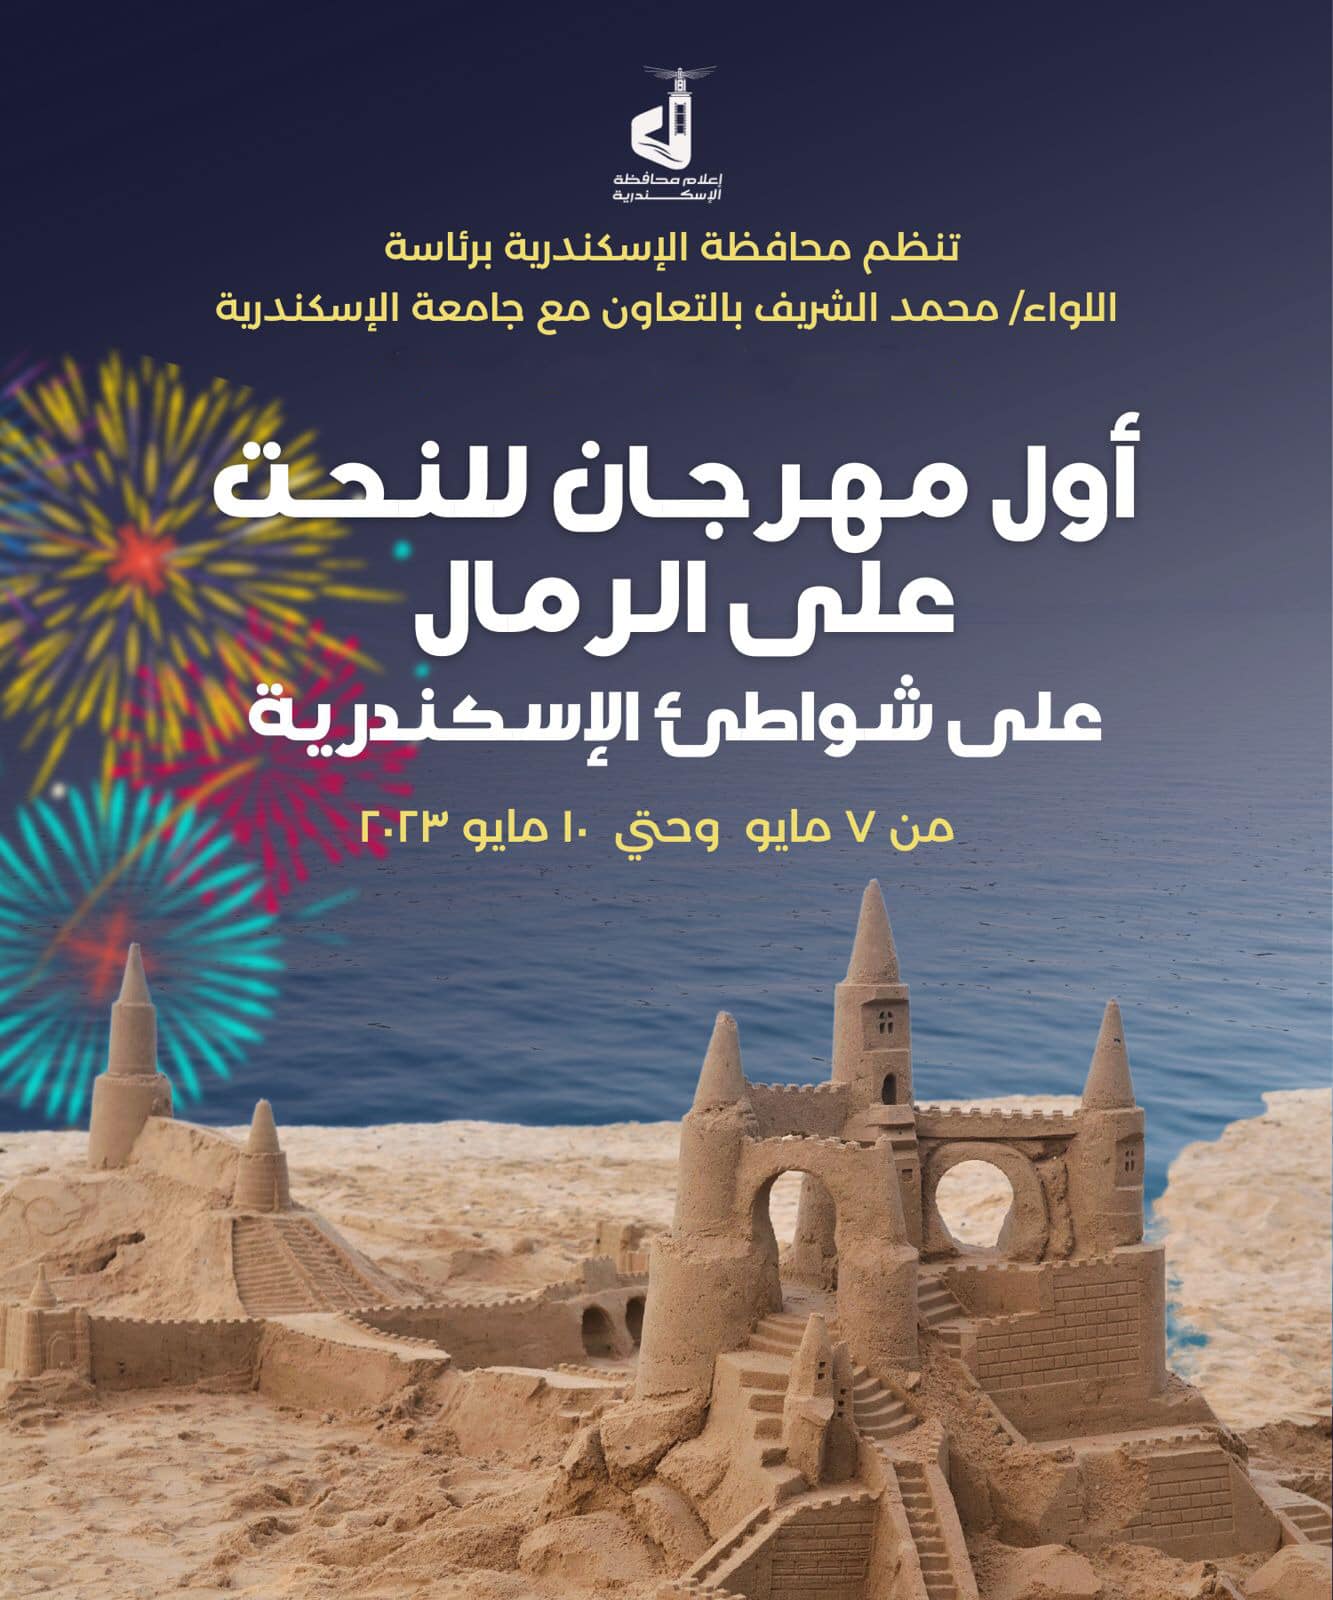 محافظ الإسكندرية يعلن عن موعد إقامة أول مهرجان للنحت على الرمال